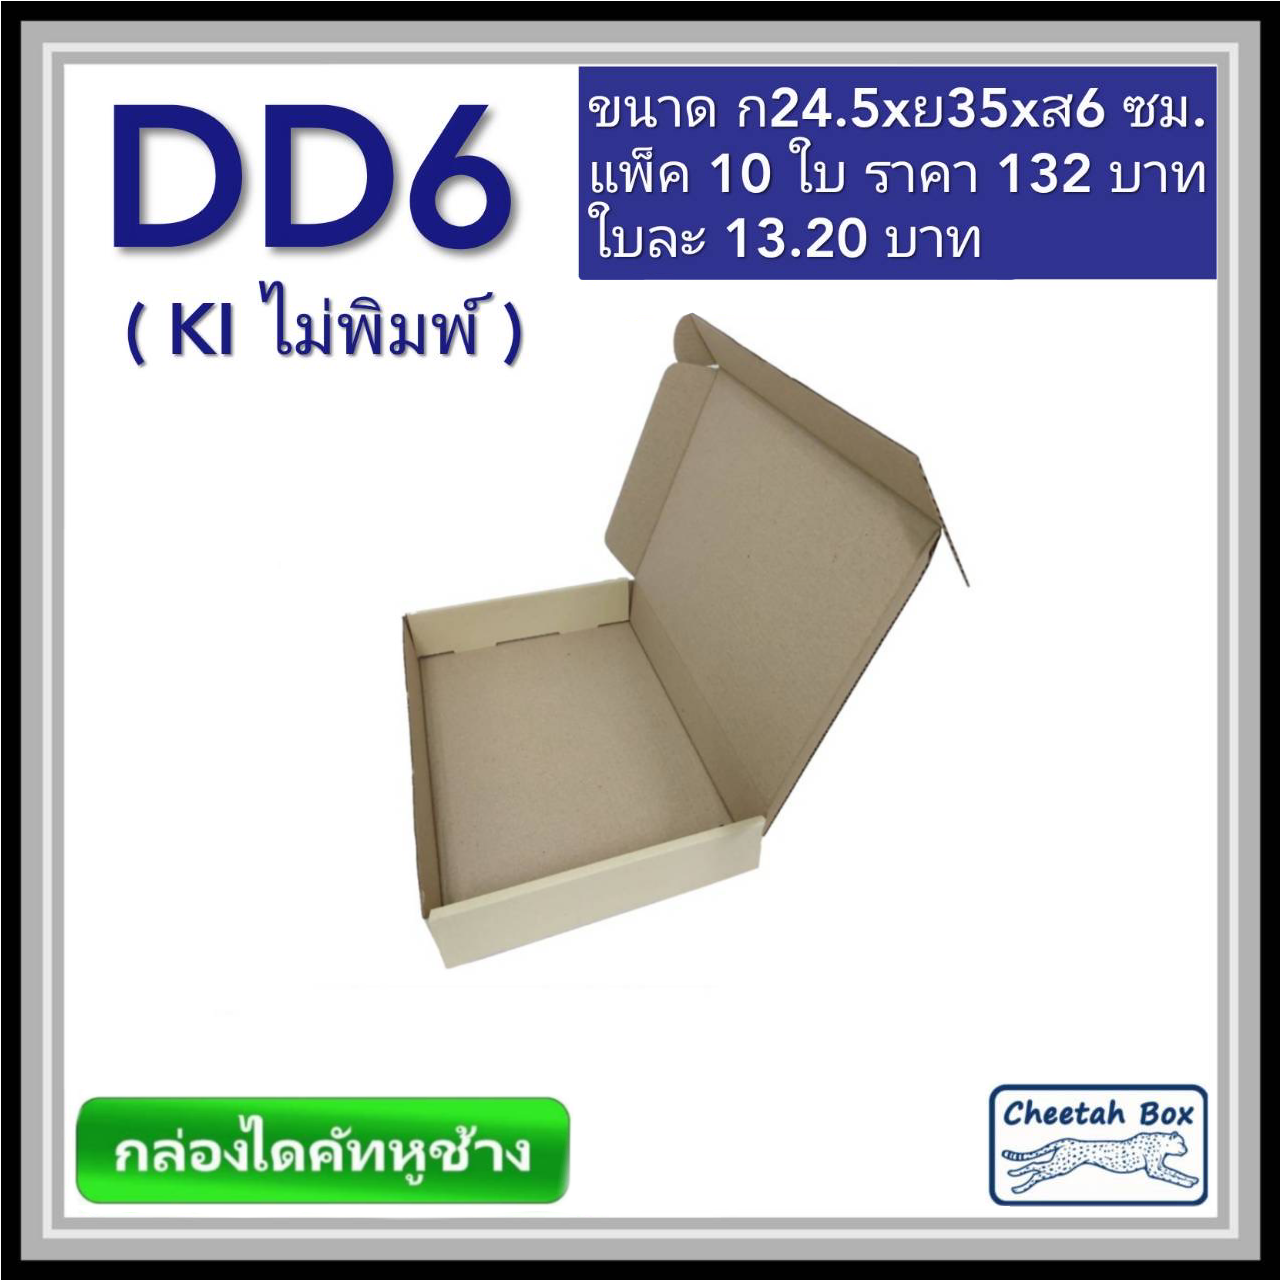 กล่องไดคัทหูช้างขนาด D สูง 6 cm. รหัส DD6 ไม่พิมพ์  (Die-cut Box) ขนาด 24.5W x 35L x 6H cm.